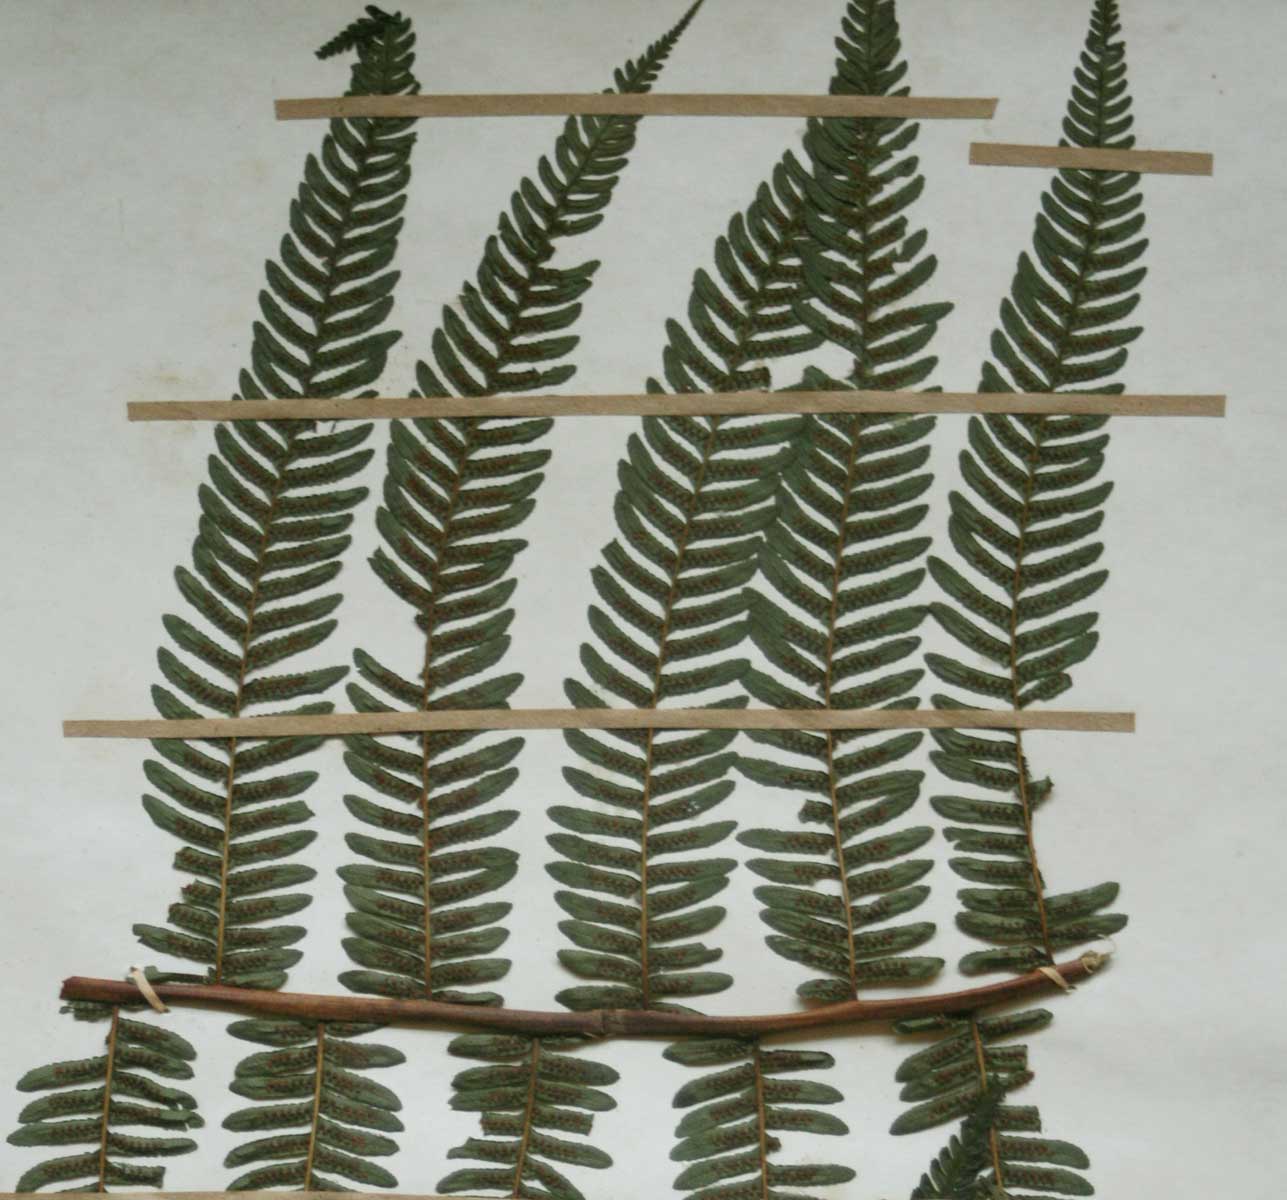 Cyathea mossambicensis